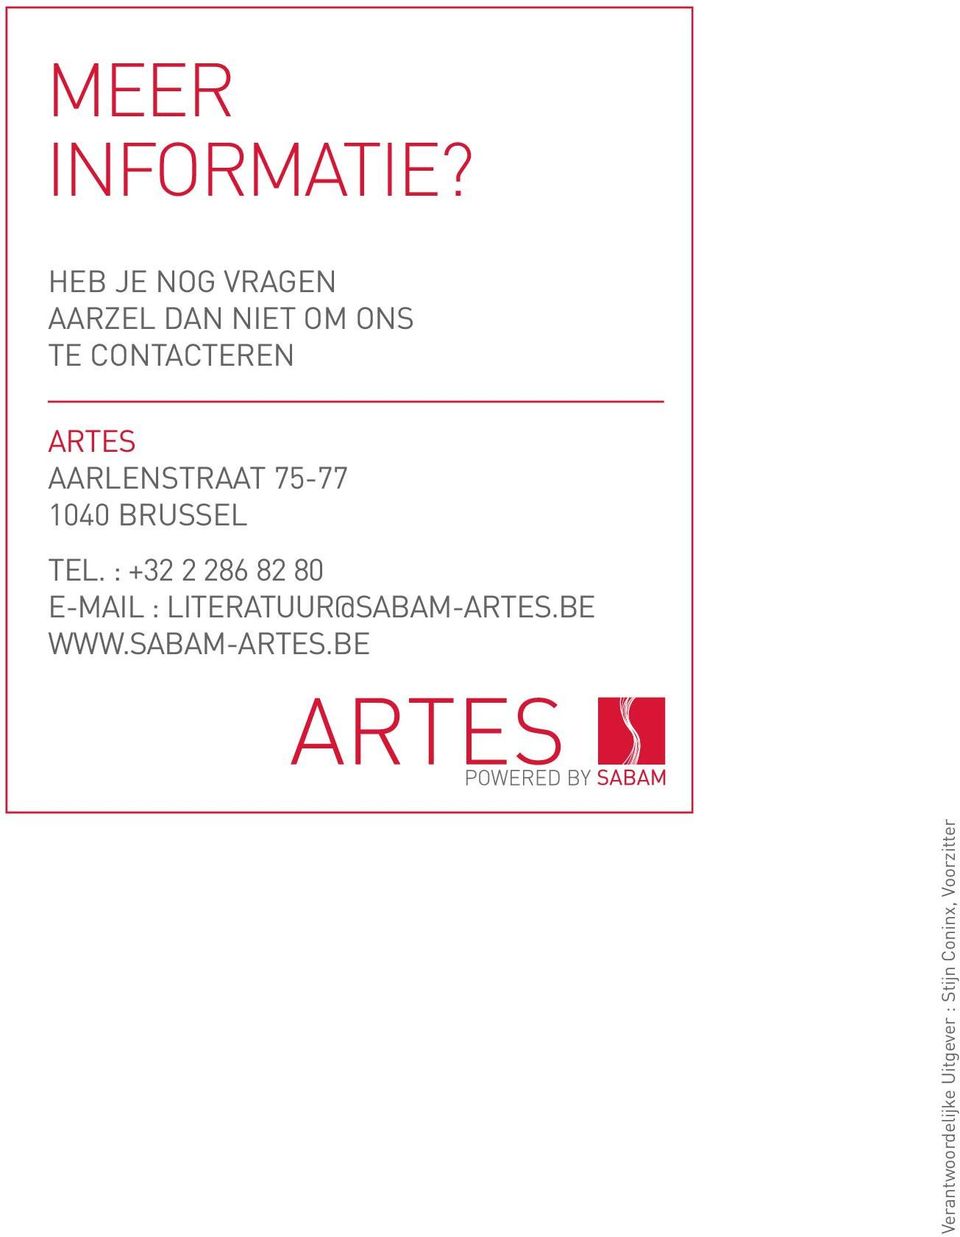 ARTES AARLENSTRAAT 75-77 1040 BRUSSEL TEL.